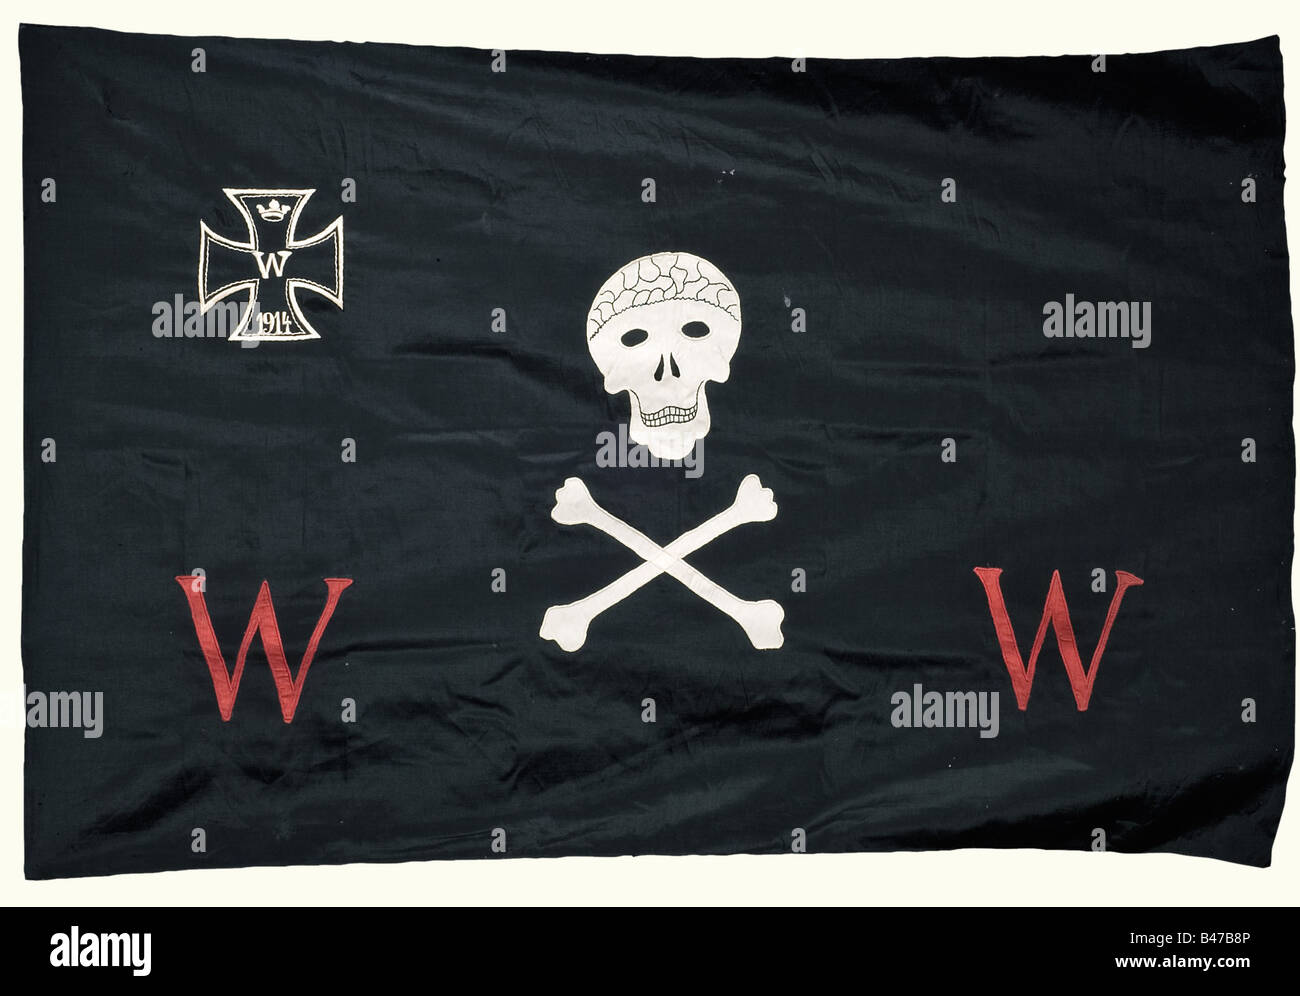 Weimar Republic, Der Wehrwolf (Associazione tedesca degli uomini), un banner, un chiodo di bandiera, e un libro di un membro Banner, presumibilmente per un gruppo locale. Panno nero e doppio in lana, con teschio applicato e ossa incrociate, Croce di ferro 1914 e due cifanti rossi "W" (Wehrwolf). Dimensioni del tessuto 124 x 184 cm. Lieve danno alla falena. Un chiodo a bandiera in lamiera di ottone stampata, 100 x 35 mm con l'emblema Wehrwolf e due rune wolfangel. C'è anche un libro per il Großgörschen Subdistretto/regione di Merseburg, Kötschau Gruppo locale, iniziato nel 1924 con un pin di appartenenza smaltato (danneggiato). , Foto Stock